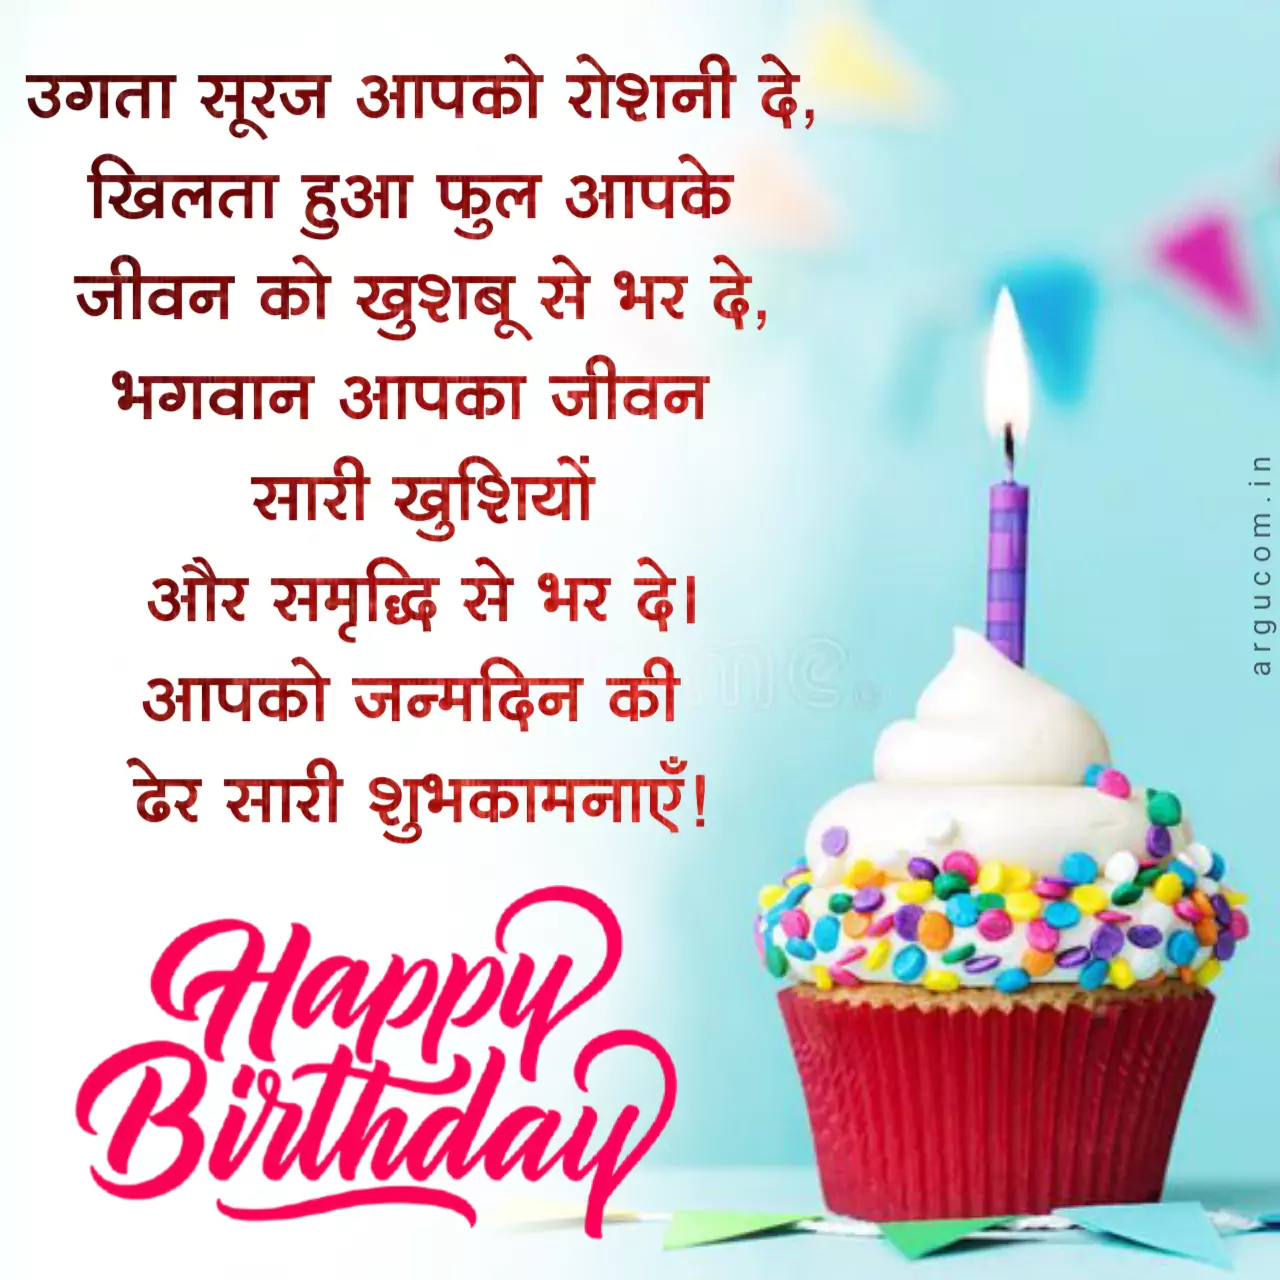 Happy Birthday In Hindi /जन्मदिन की शुभकामनाएं हिंदी 